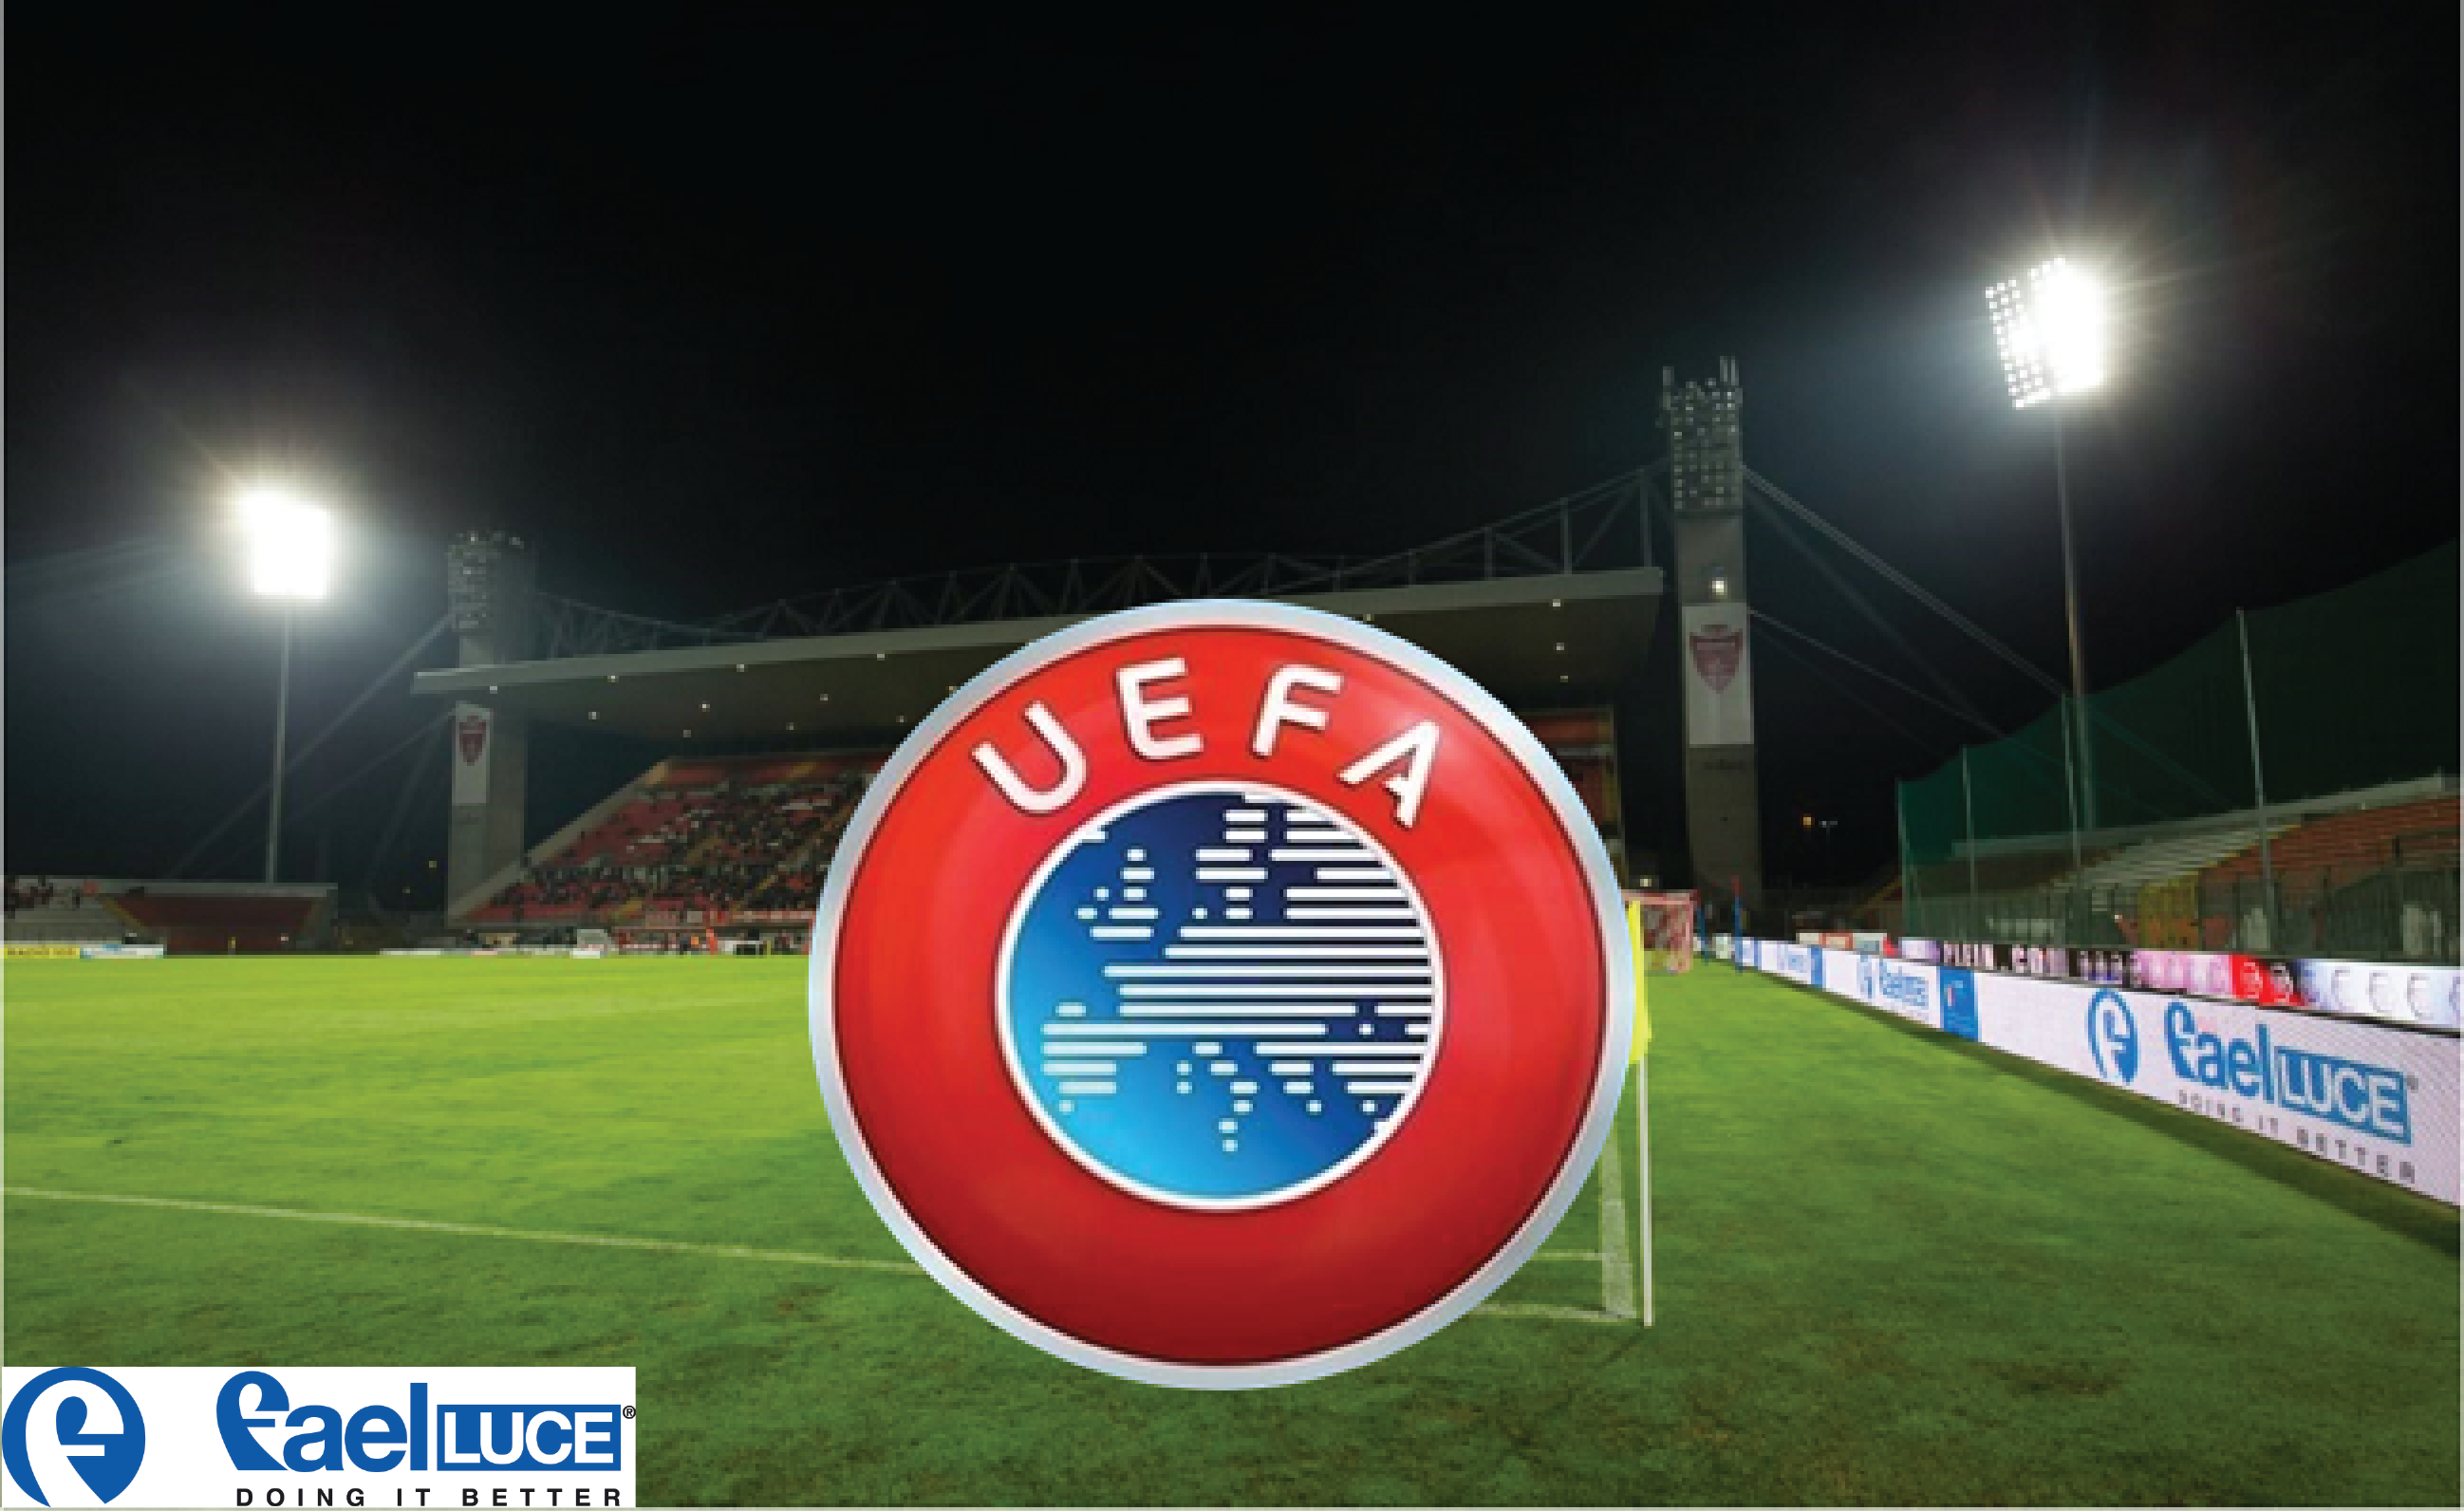 UEFA ACCREDITED BRIANTEO STADIUM